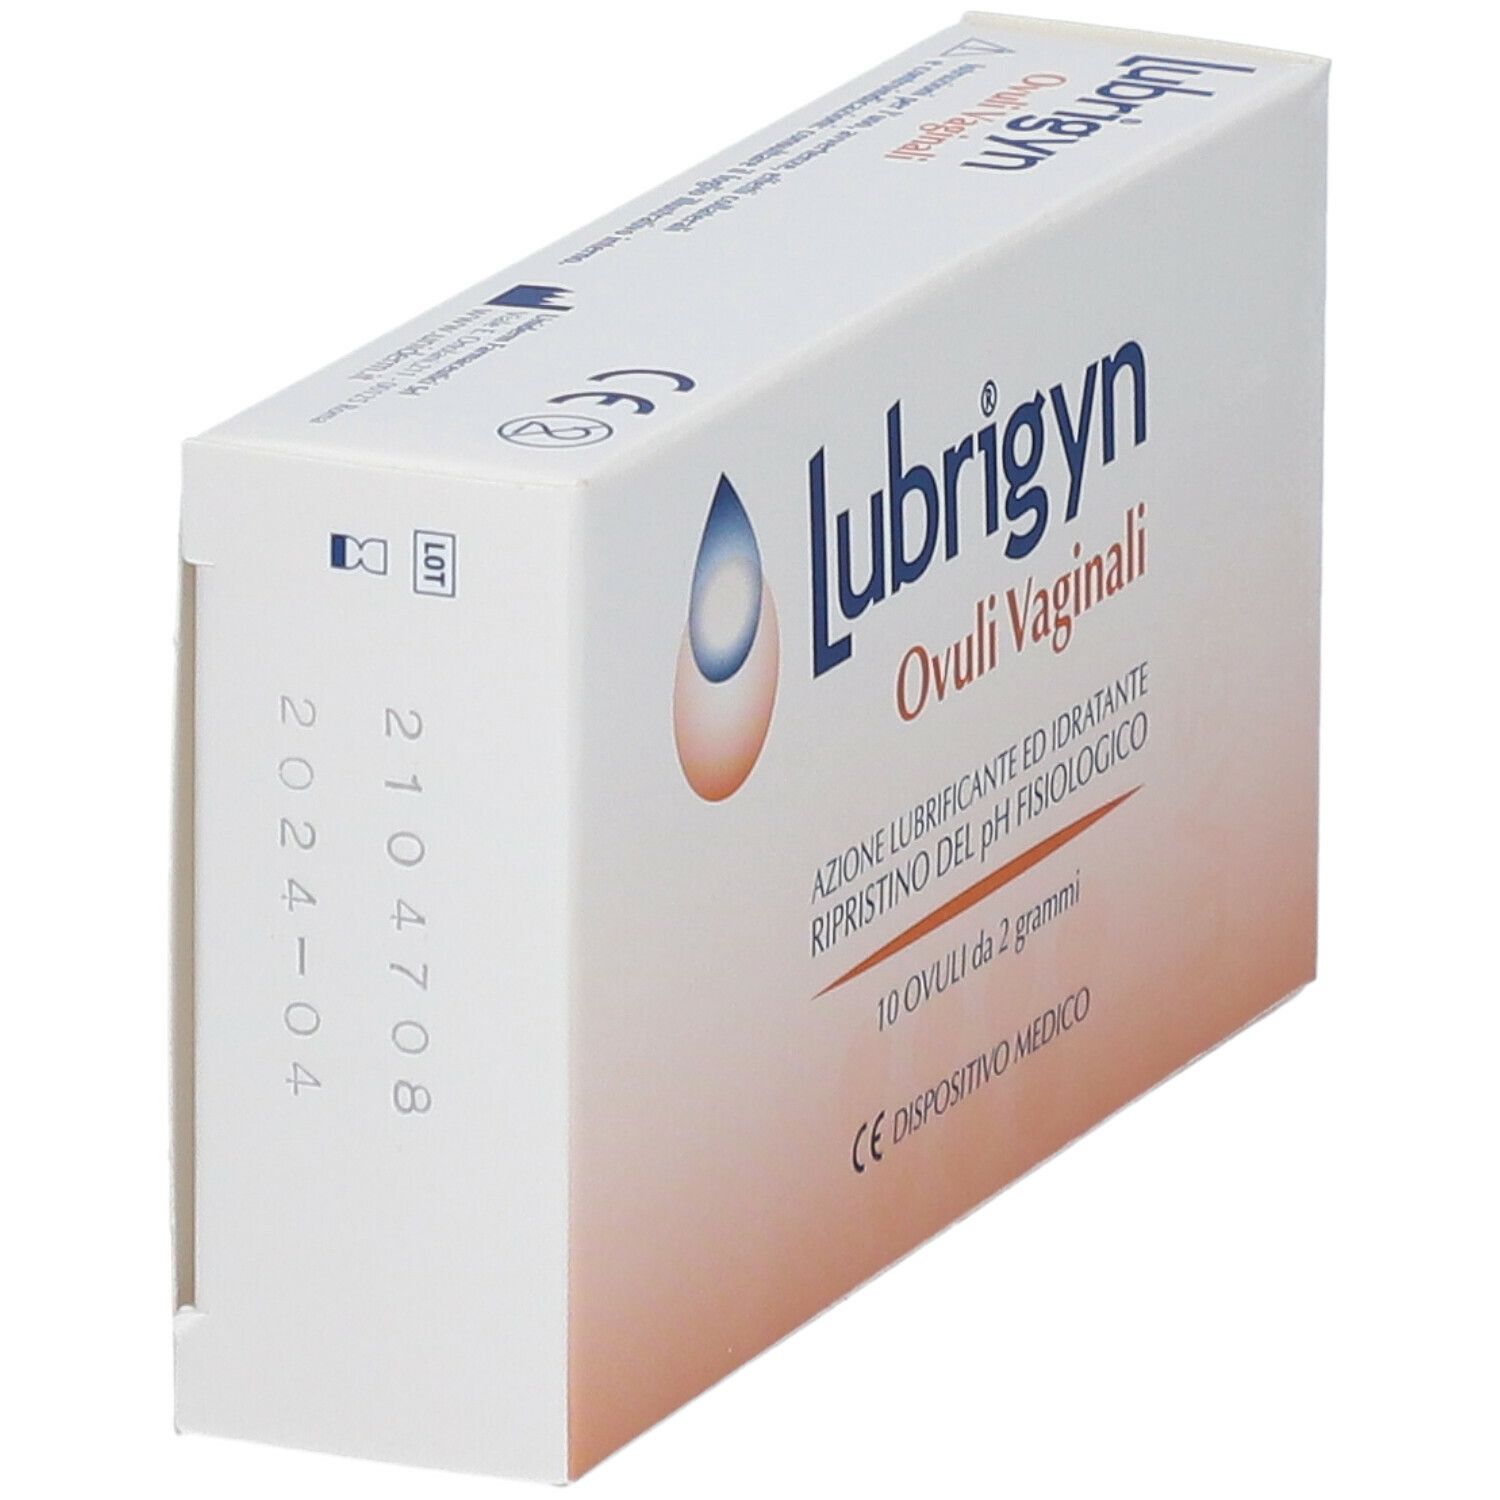 Lubrigyn® Ovuli Vaginali